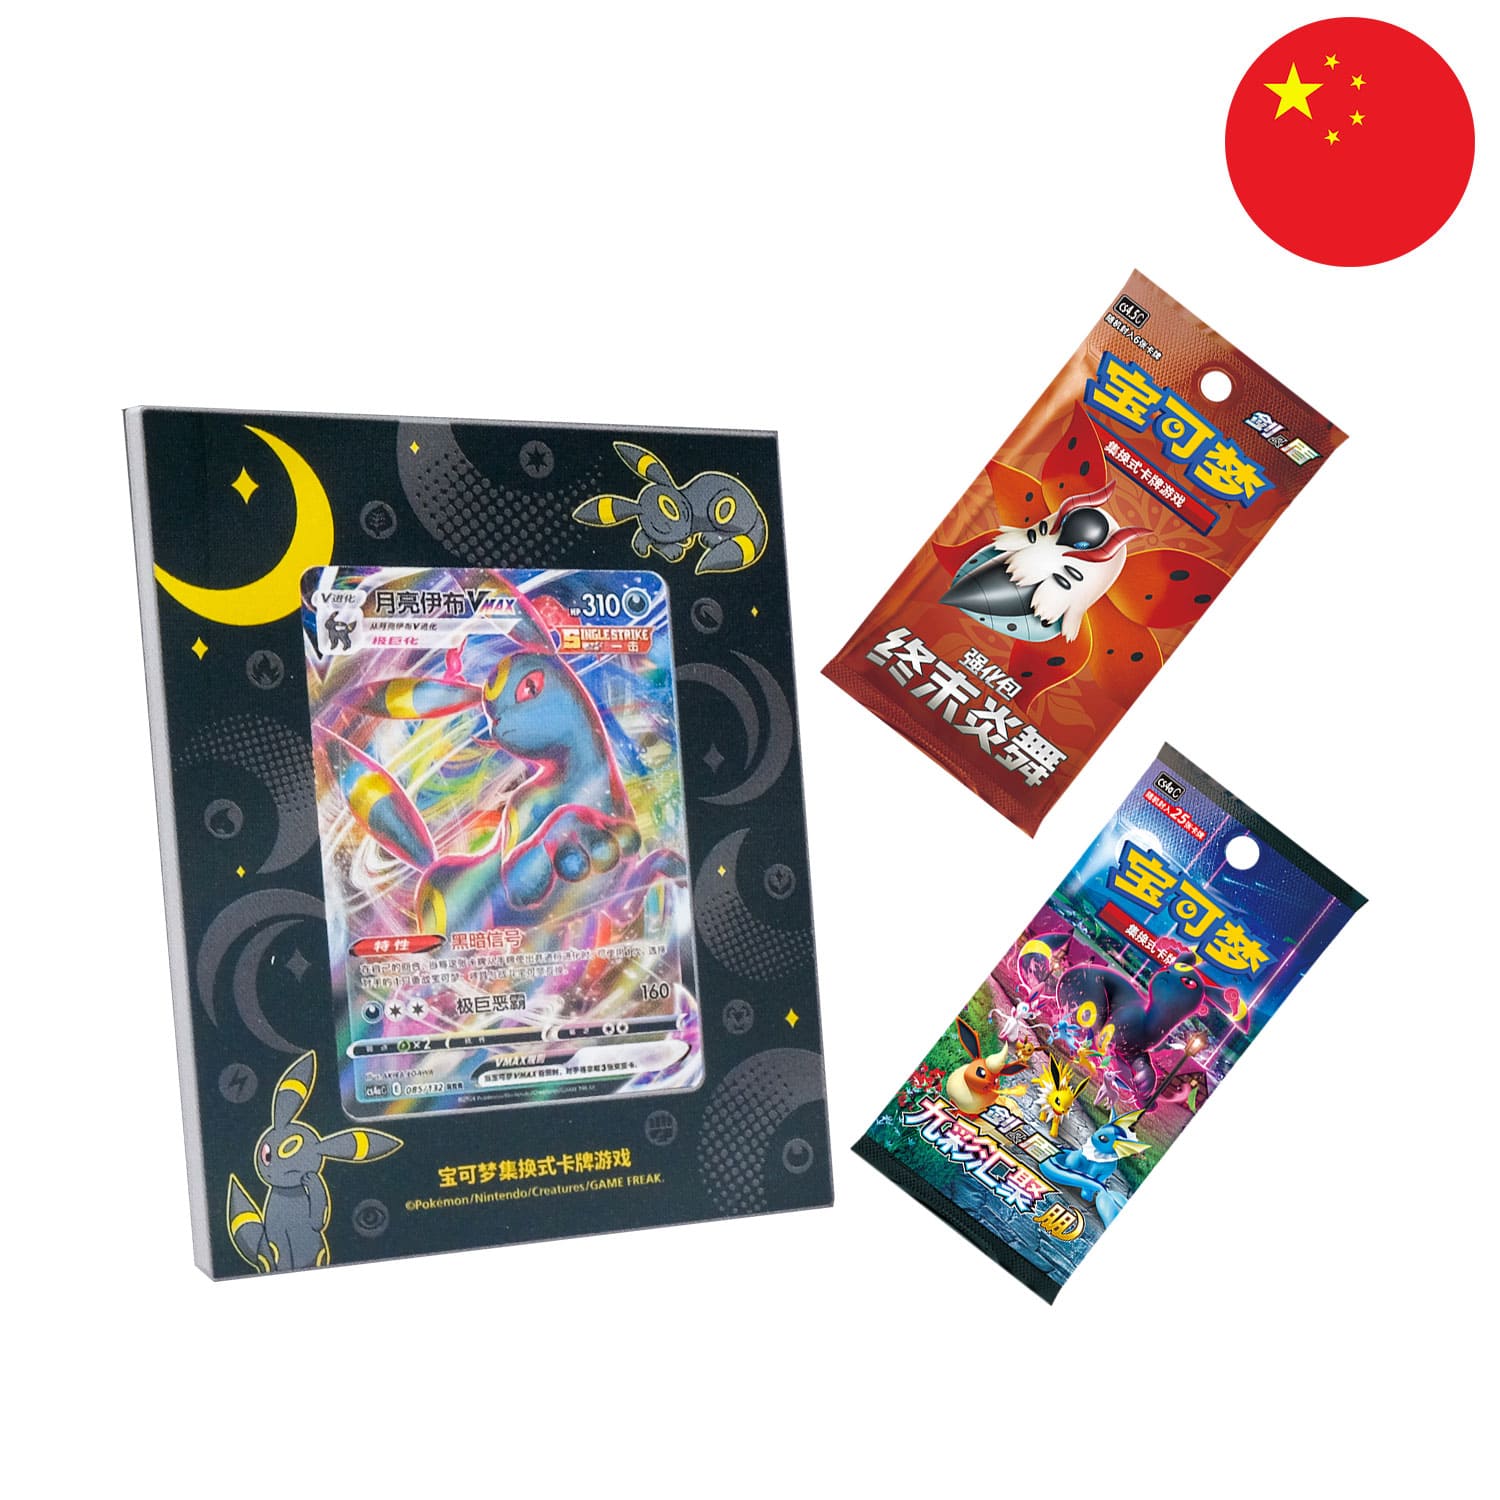 Der Inhalt von der Nachtara Kartenhalter Box (CS4.5DF1), sortiert und aneinandergereiht, mit der Flagge Chinas in der Ecke.